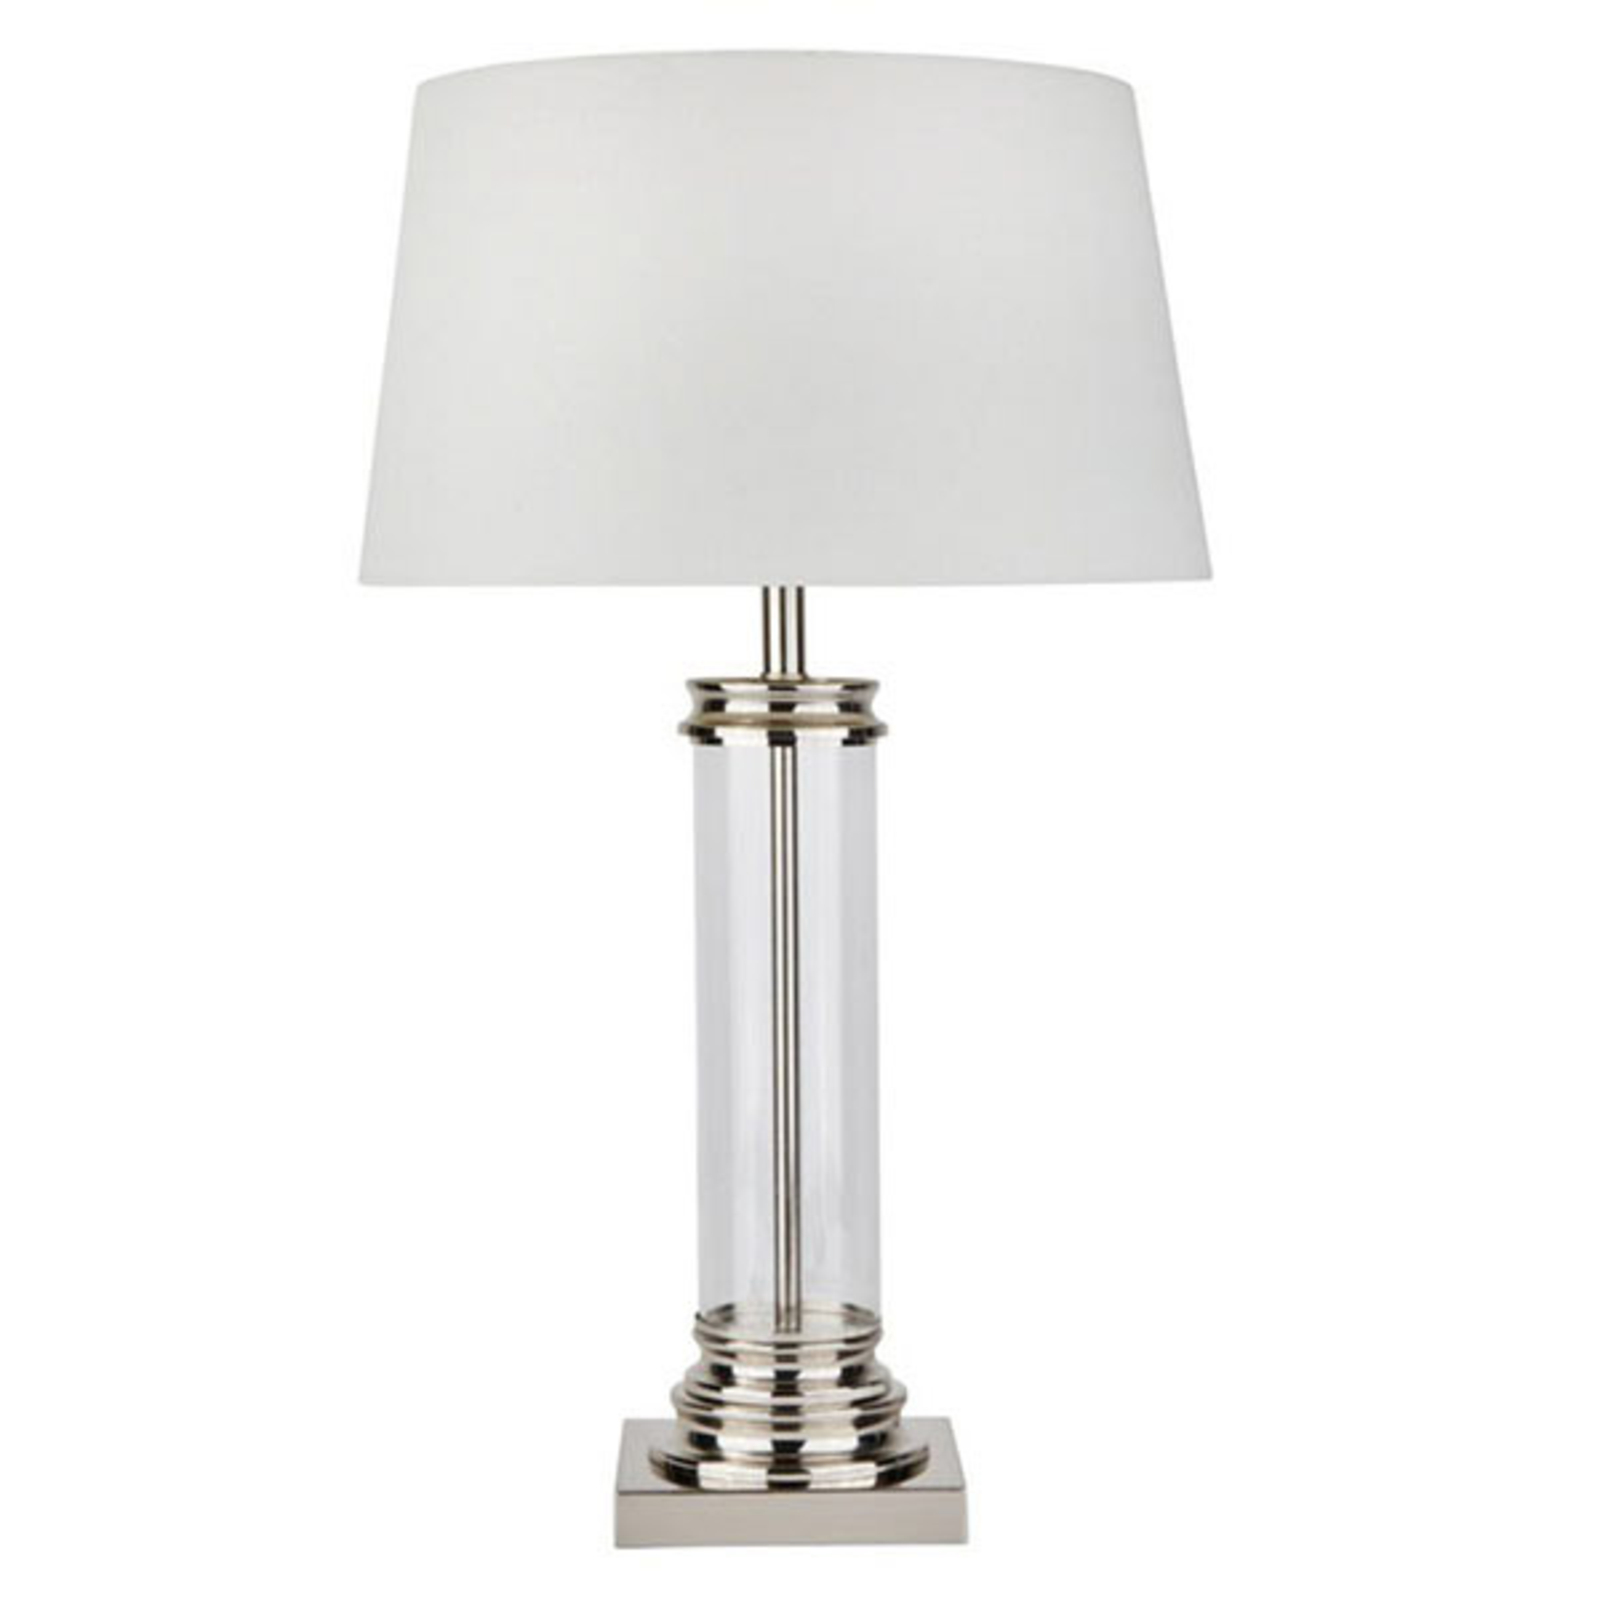 Lampa stołowa Pedestal, srebrna z kloszem kremowym